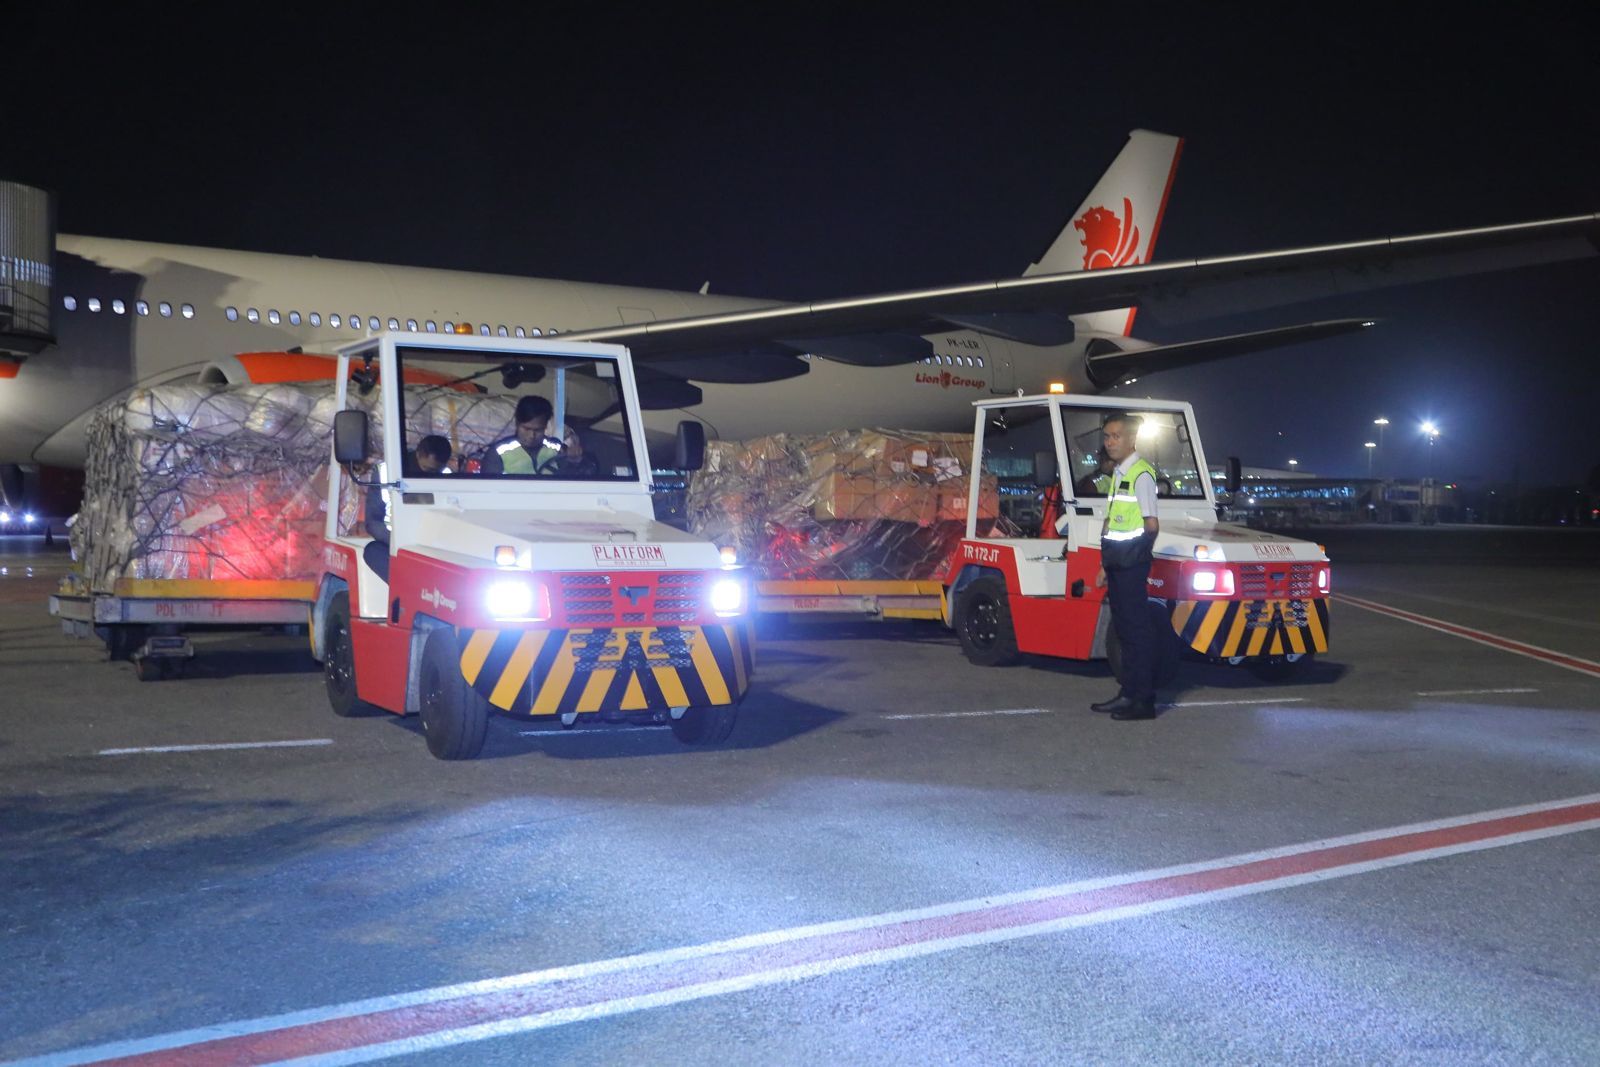 Bantuan kemanusiaan pemerintah Indonesia untuk Palestina kembali diterbangkan via Bandara El Aris, Mesir. Satu pesawat carter Lion Air A 330 diberangkatkan untuk membawa bantuan kemanusiaan bagi masyarakat Palestina.